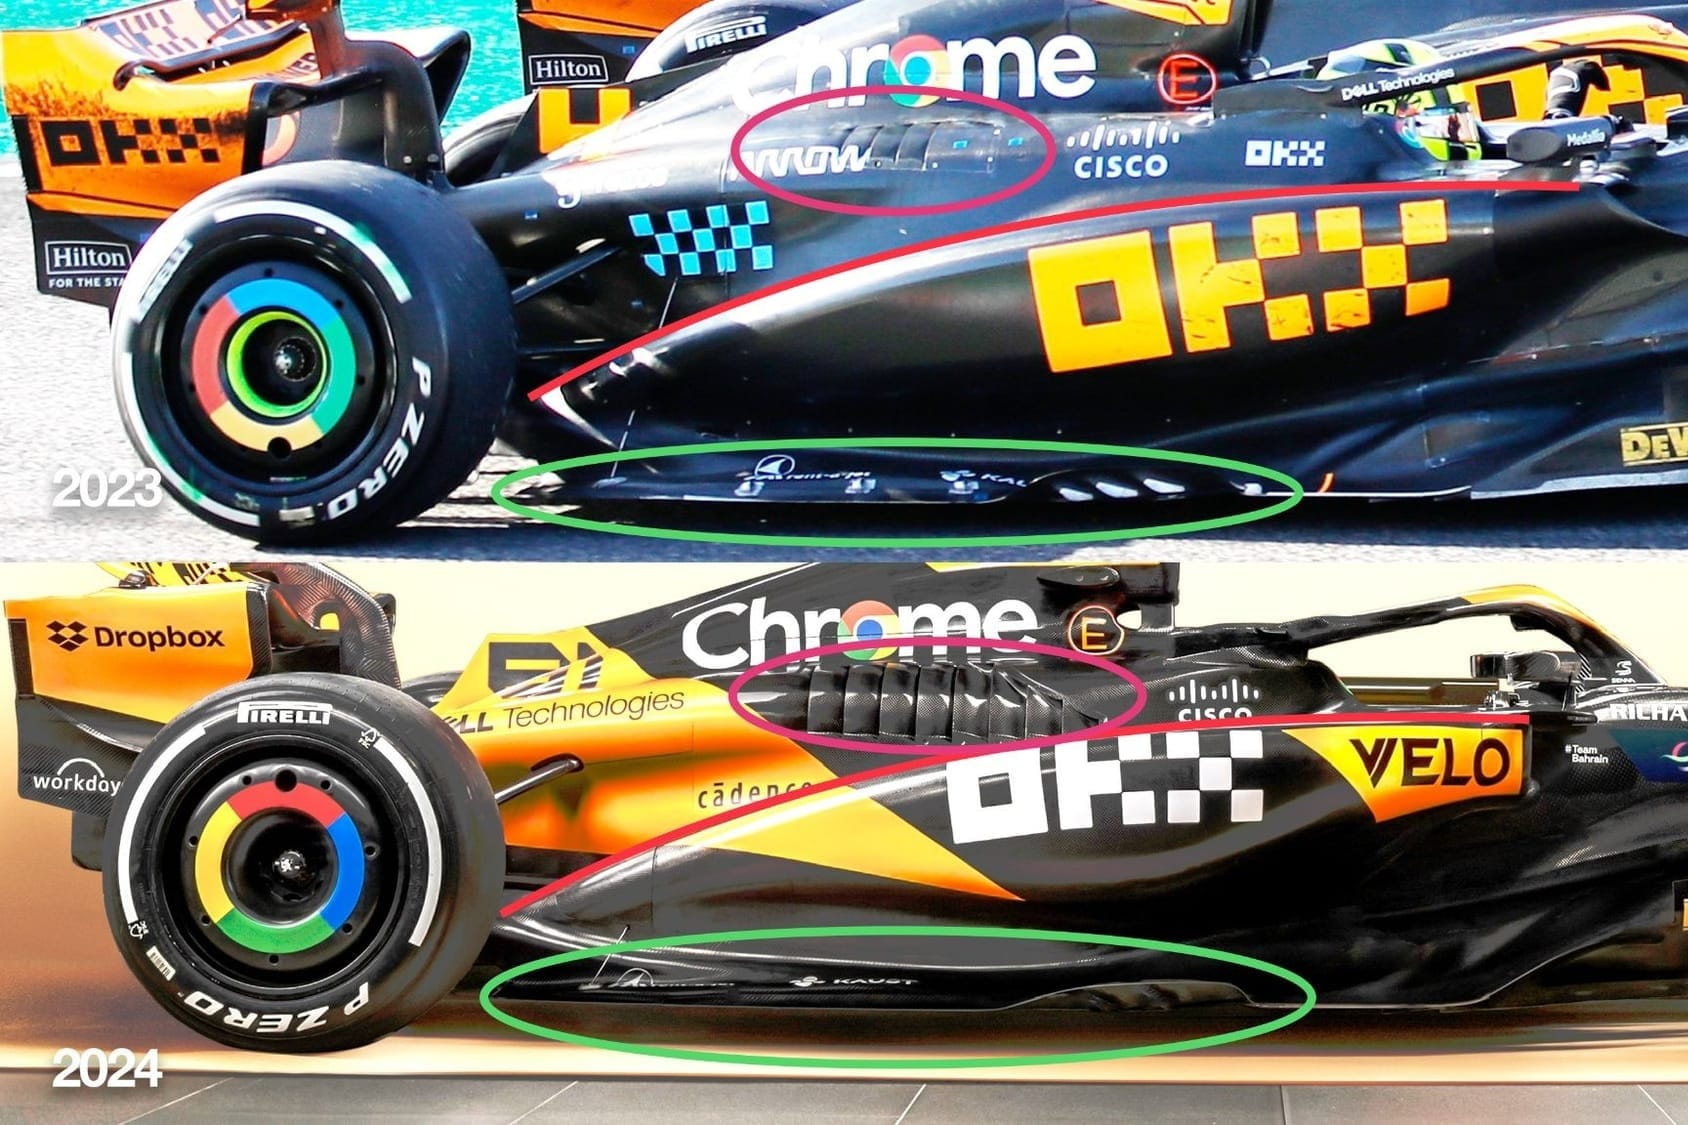 McLaren F1 2023 2024 comparison